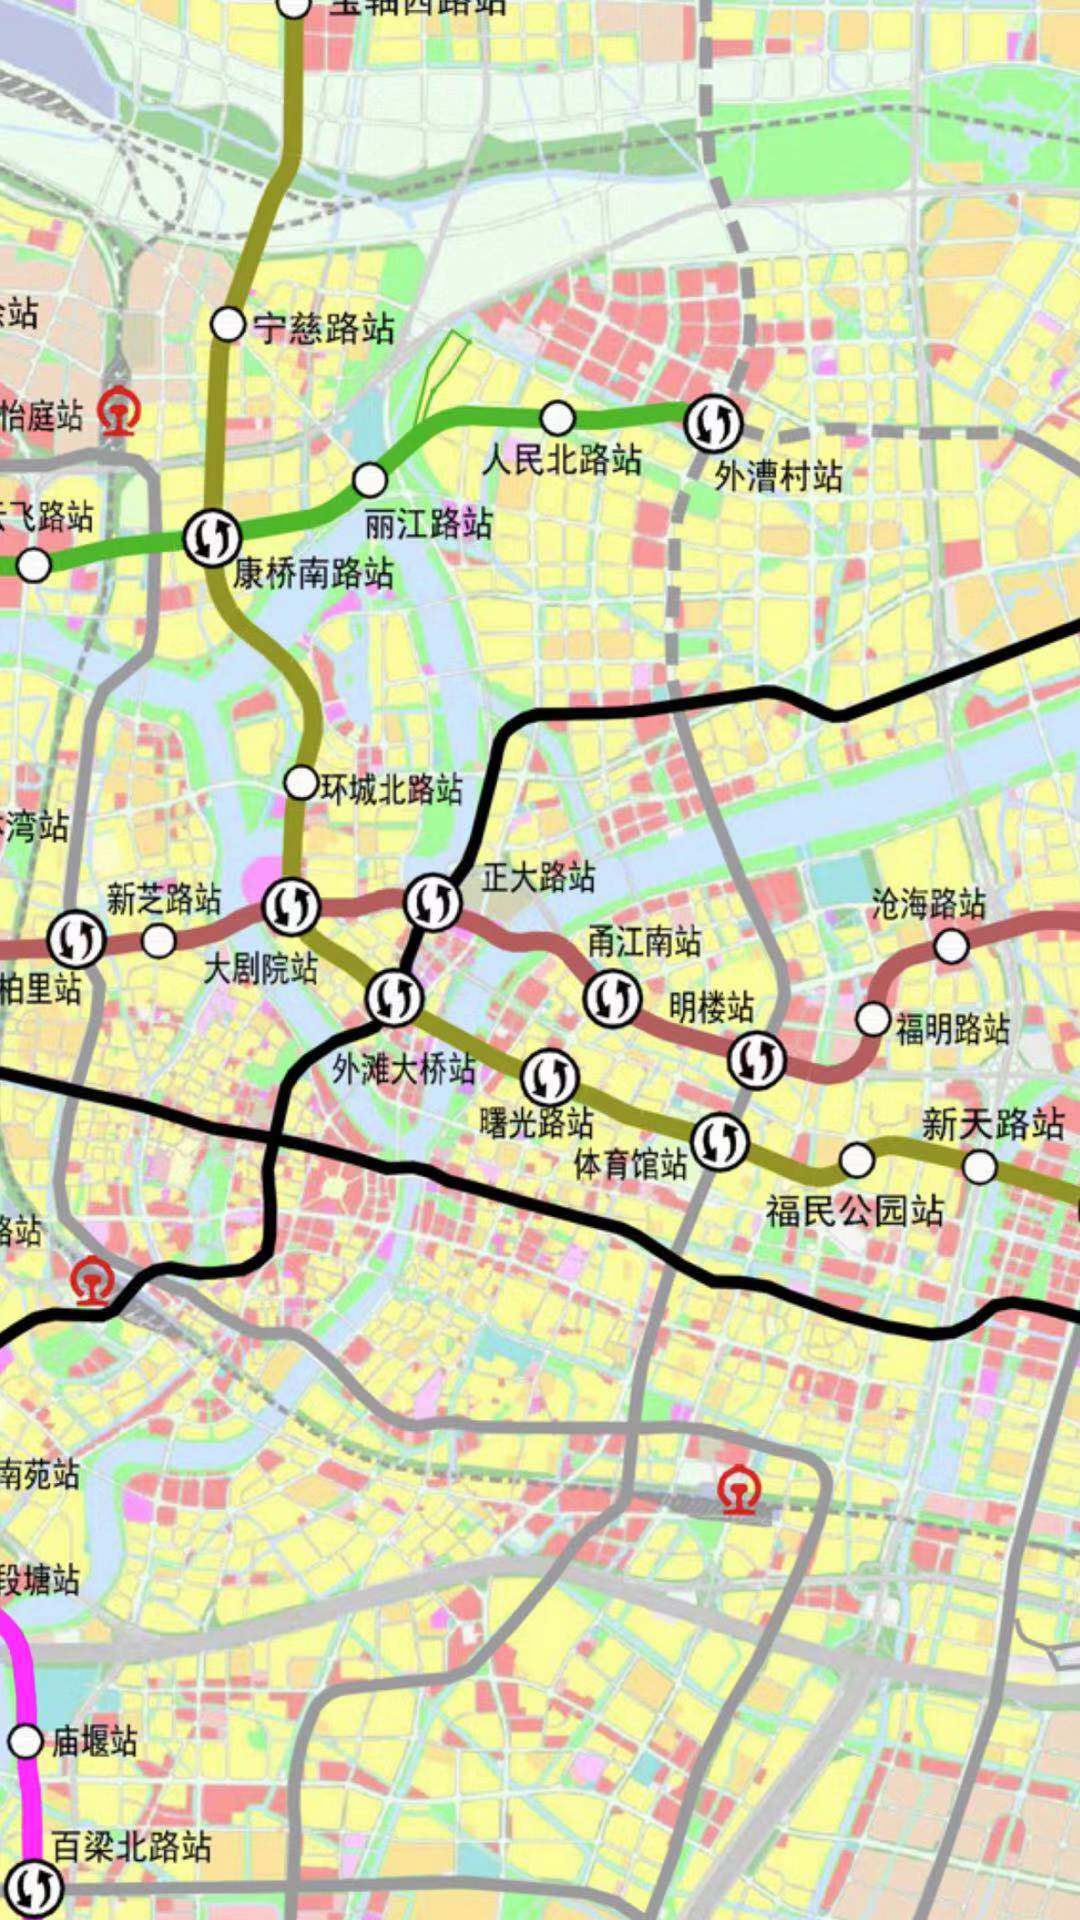 宁波财富中心和书城区域将有地铁7号线地铁站规划曙光路站